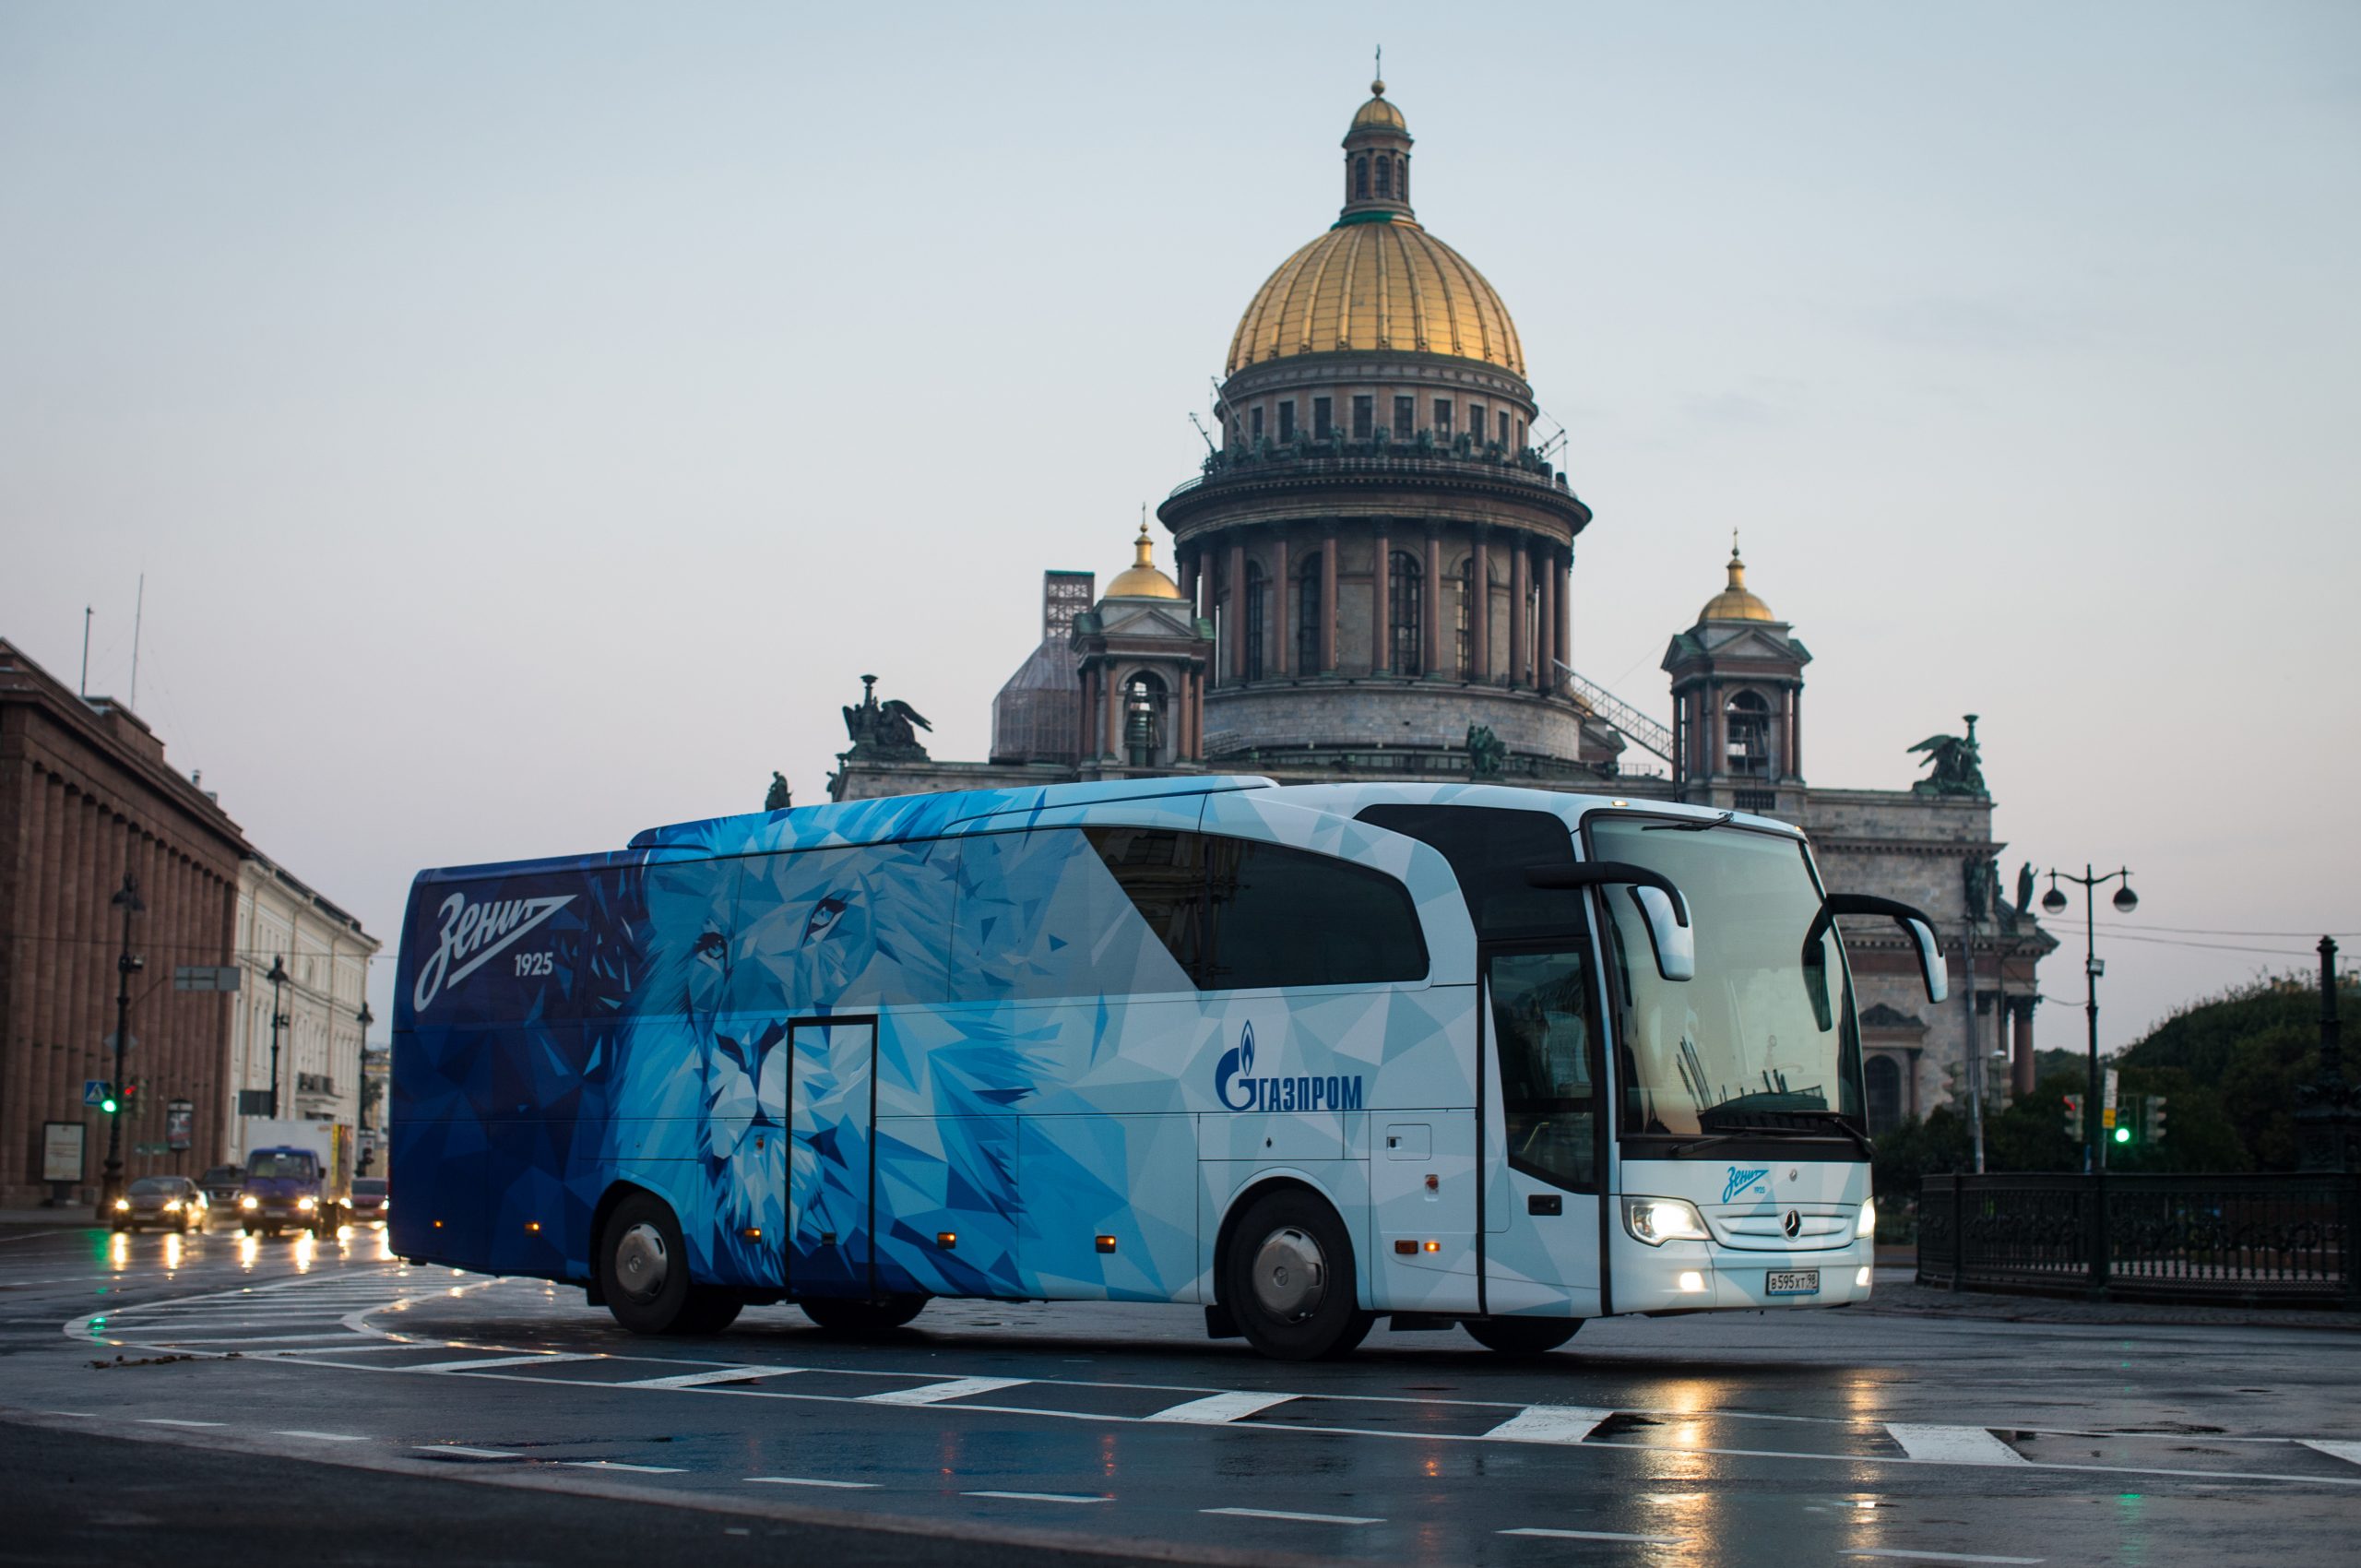 Имиджевая съемка автобуса ФК«Зенит»